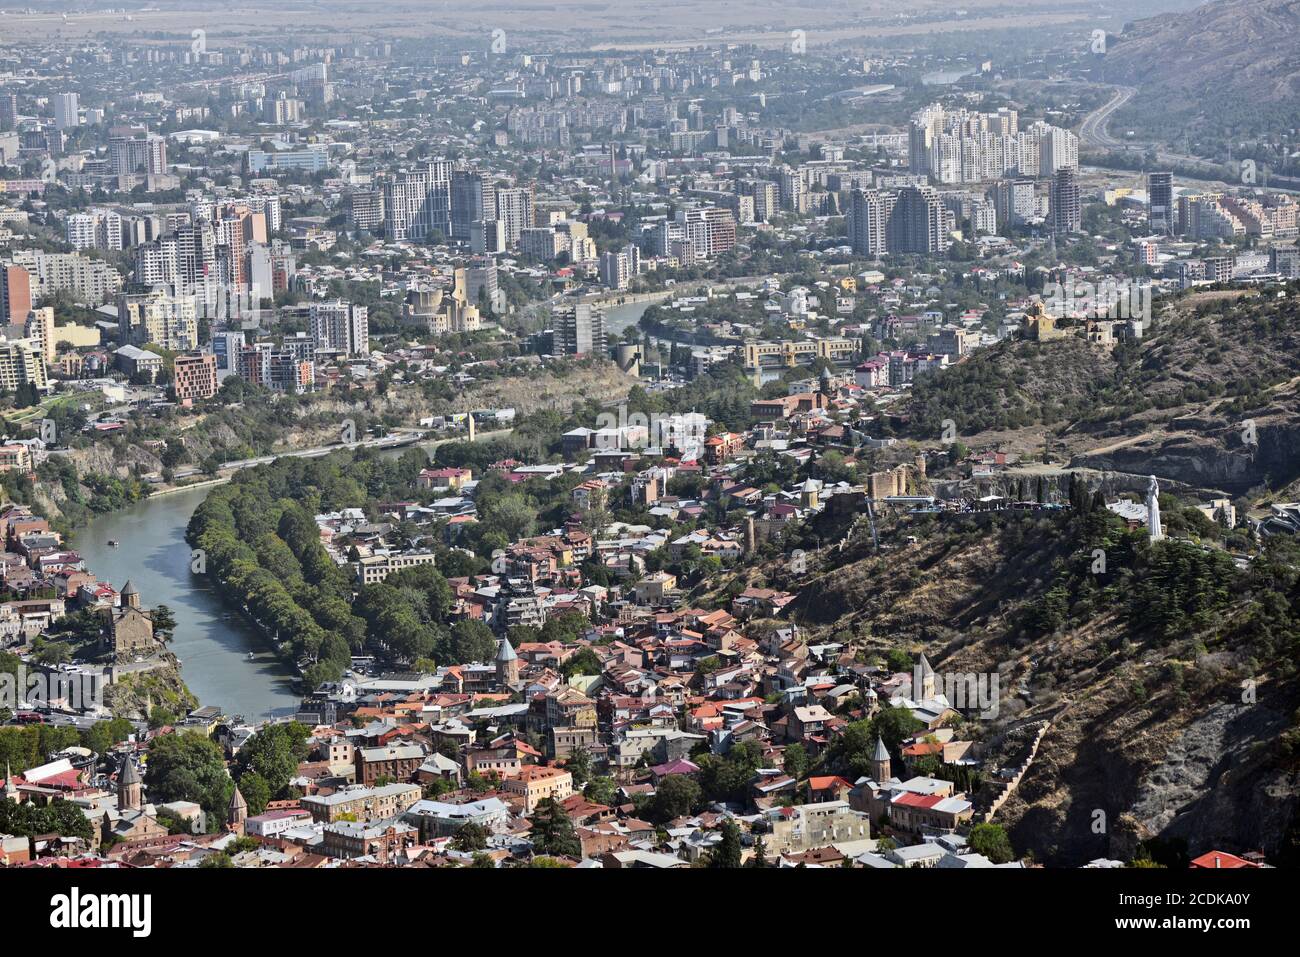 Vue panoramique de Tbilissi depuis le mont Mtatsminda : colline de Sololaki, monument de Kartlis Deda, forteresse de Narikala et rivière Kura. République de Géorgie. Banque D'Images